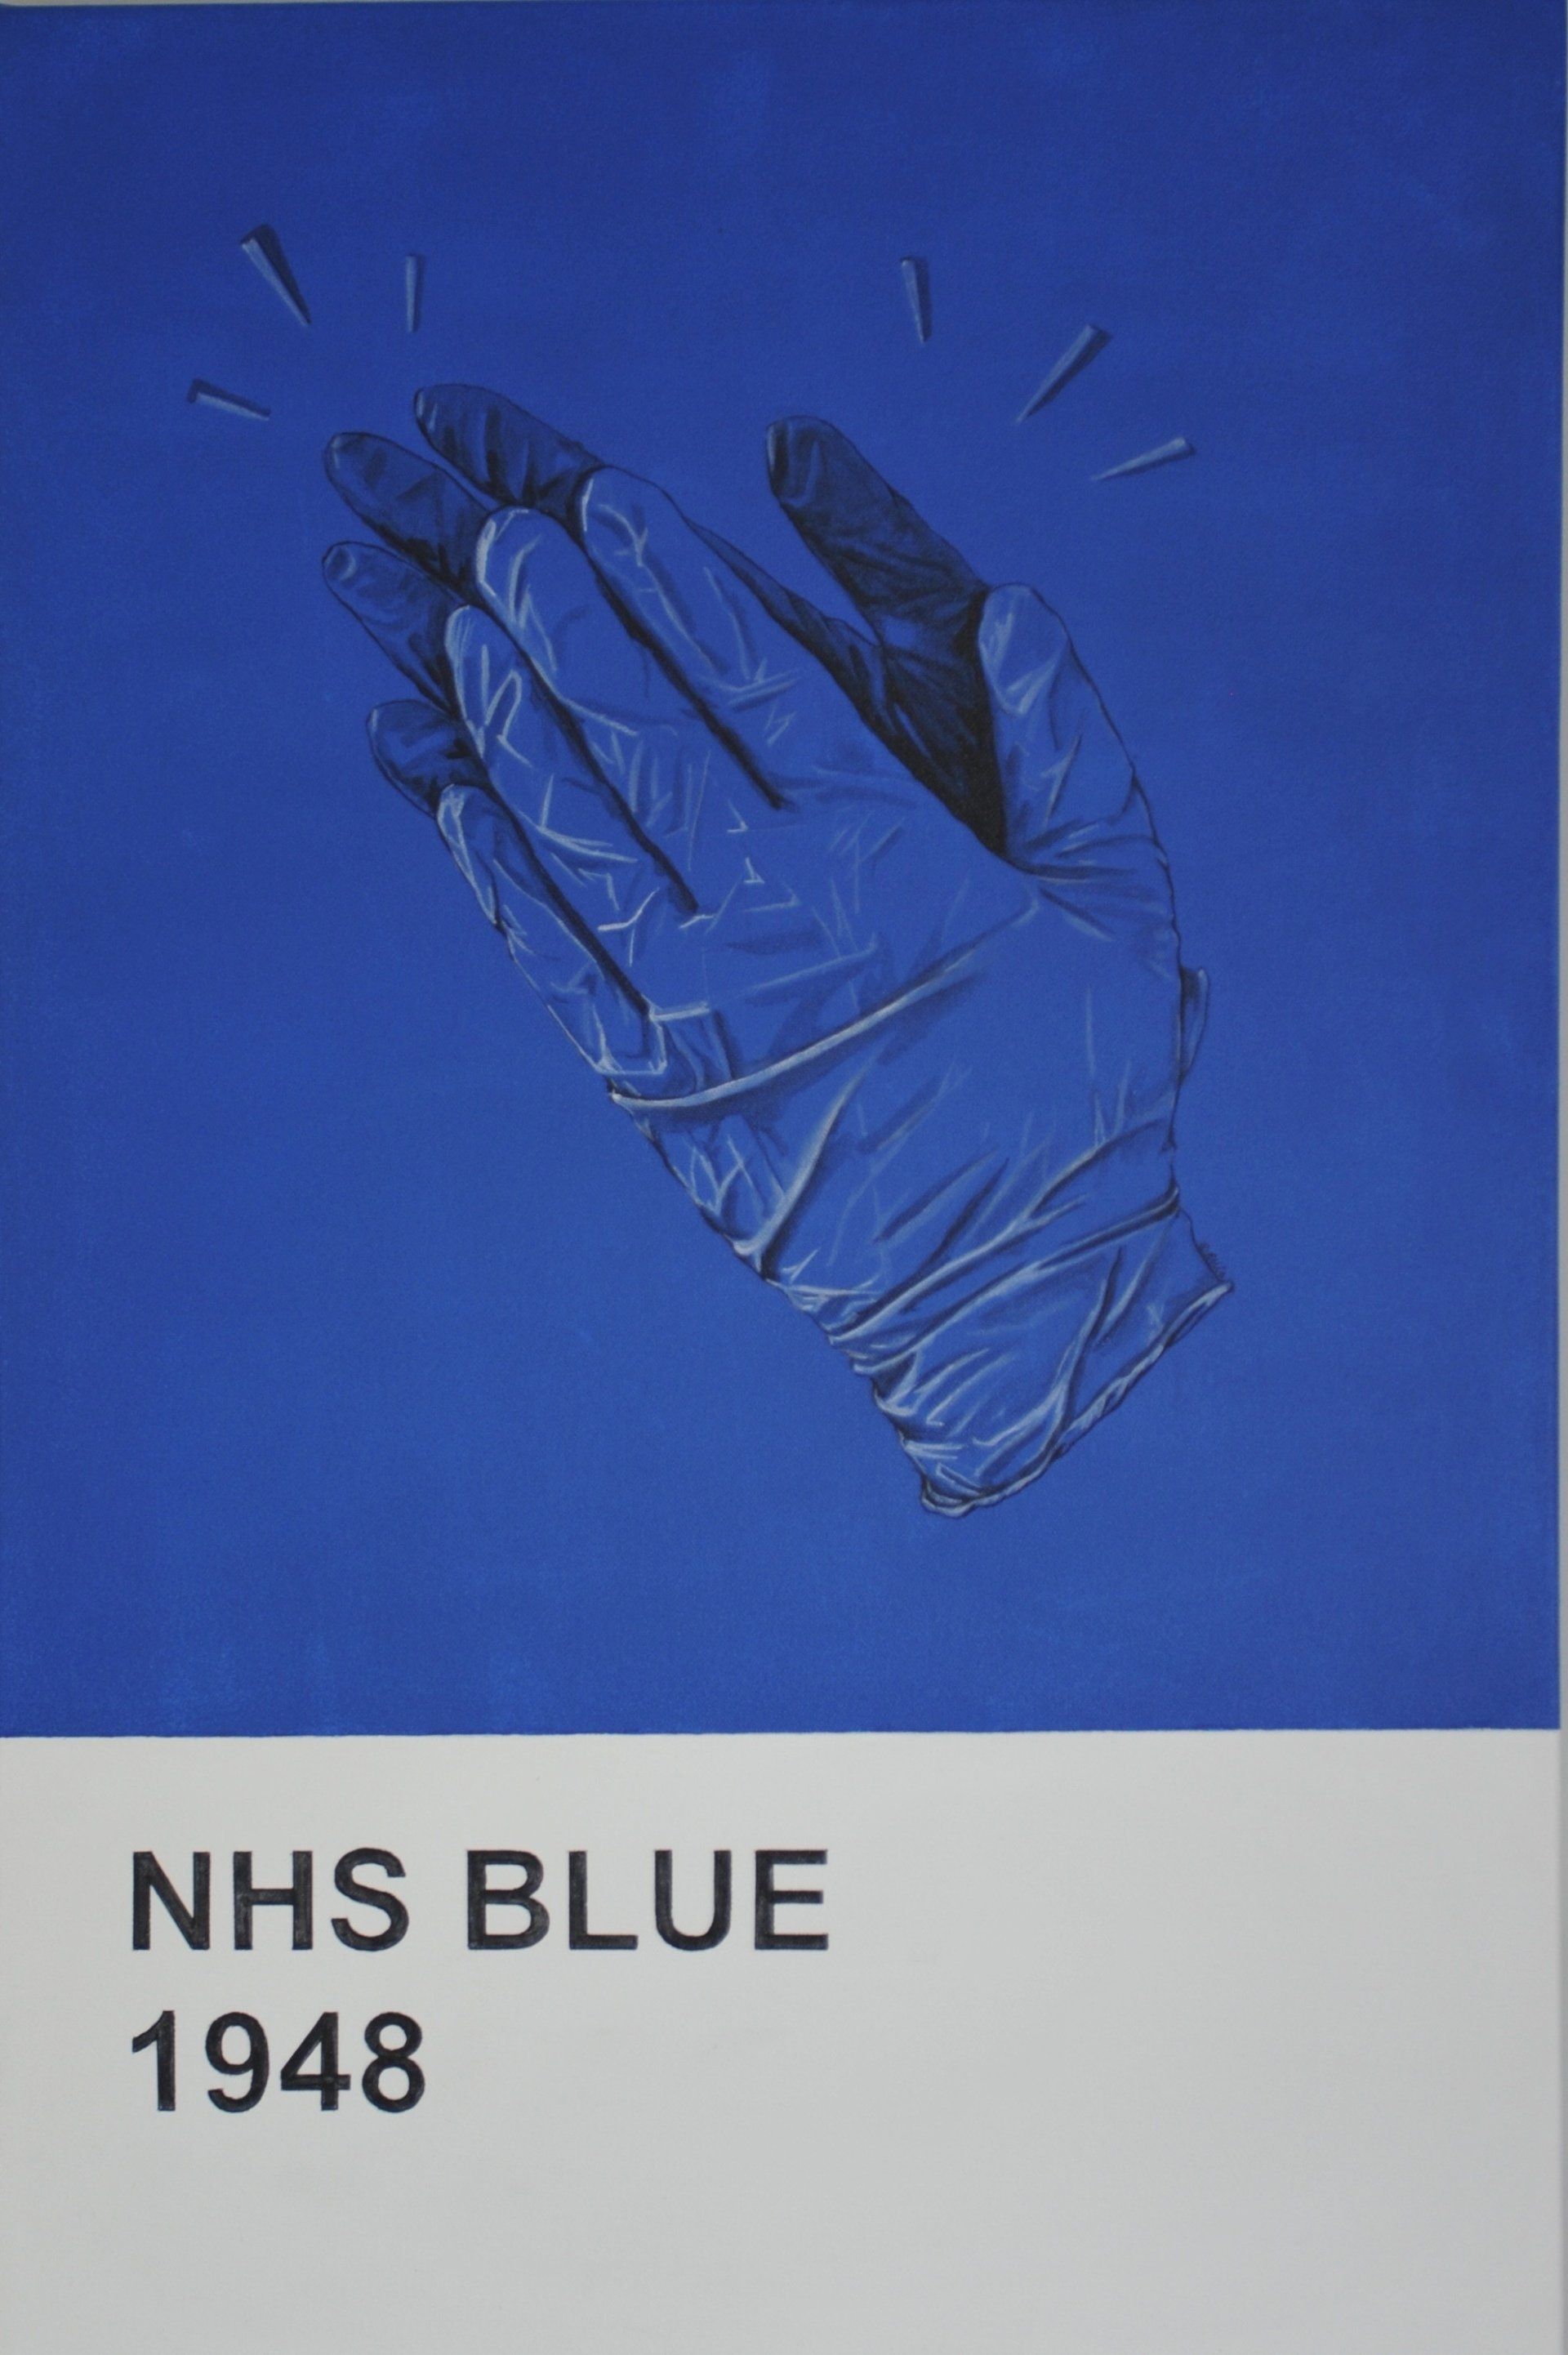 NHS blue 1948 by anne-marie ellis